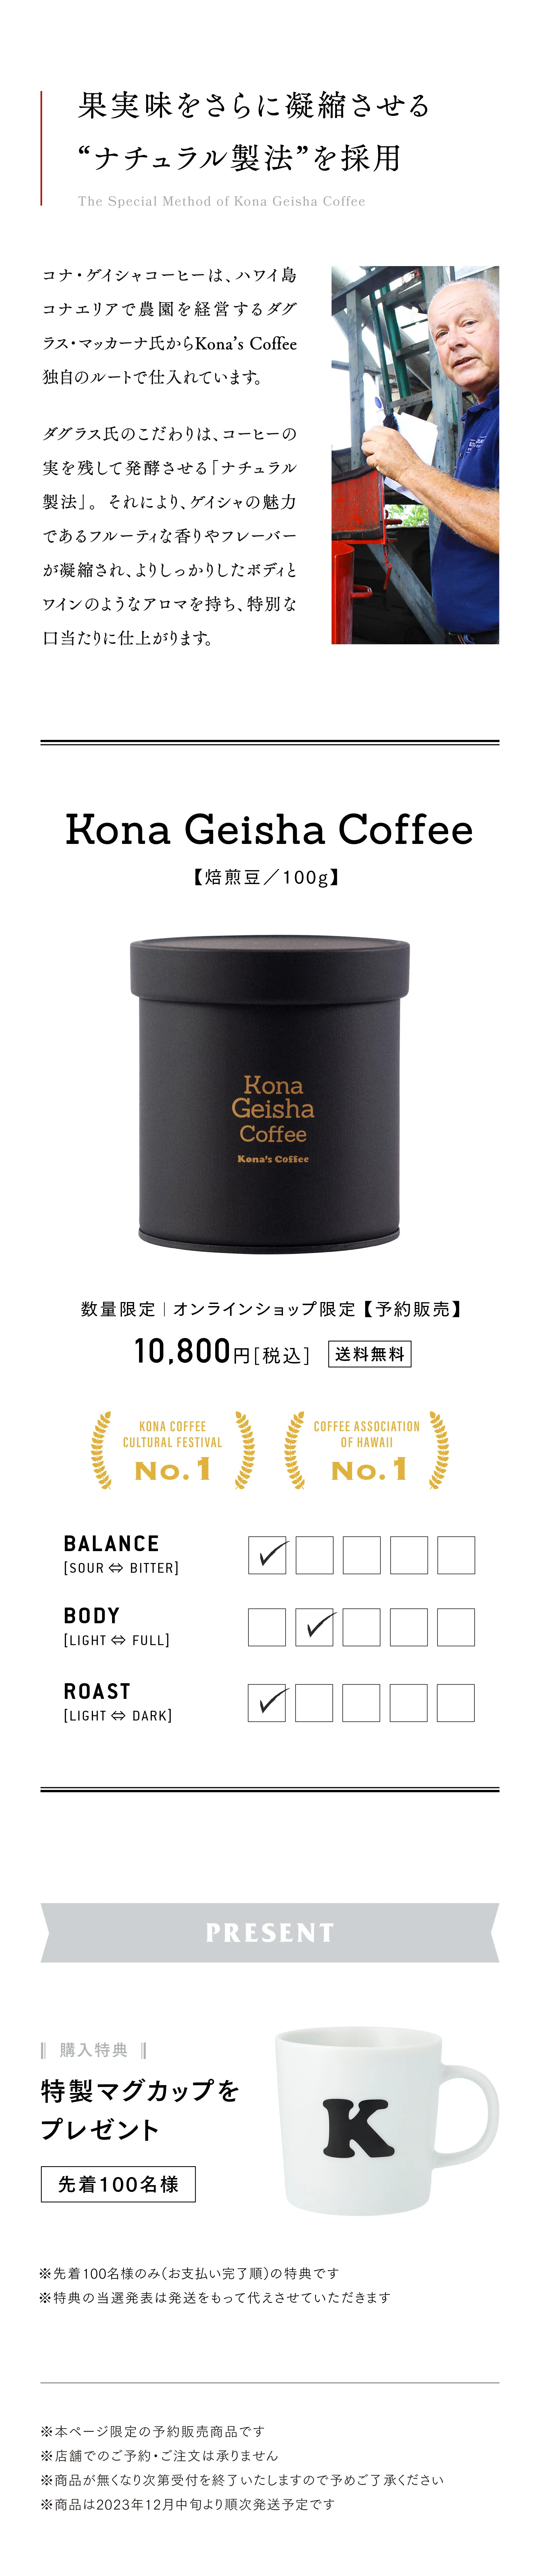 Kona Geisha Coffee